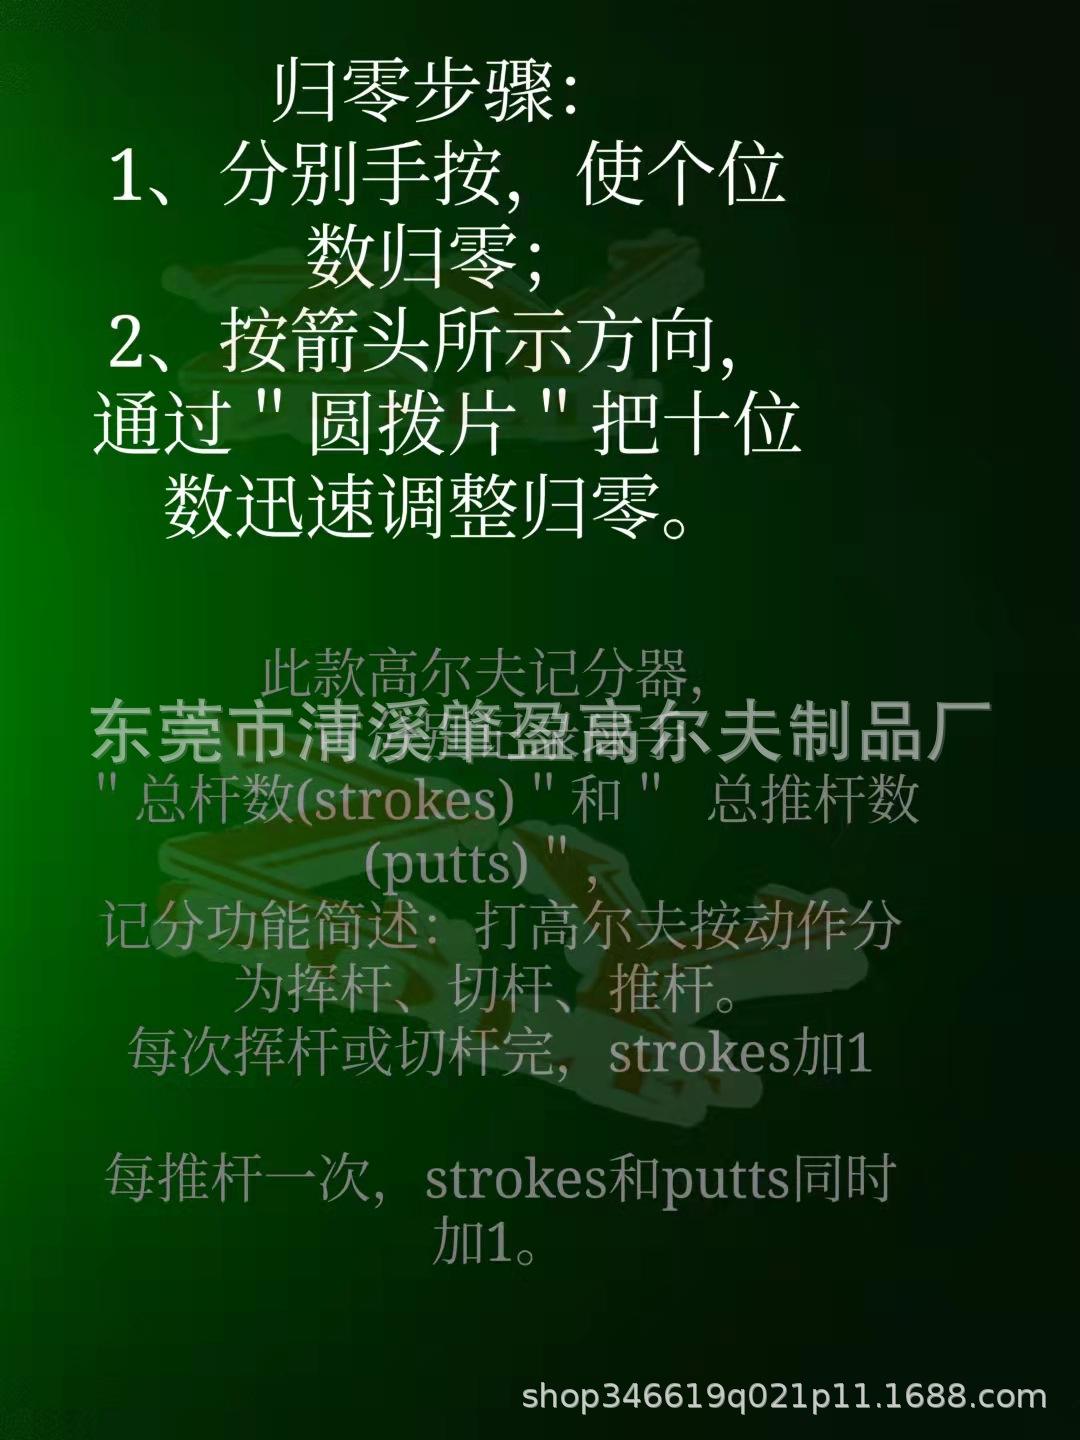 高尔夫球苹果手机中文版计分软件oktaverify苹果ios下载